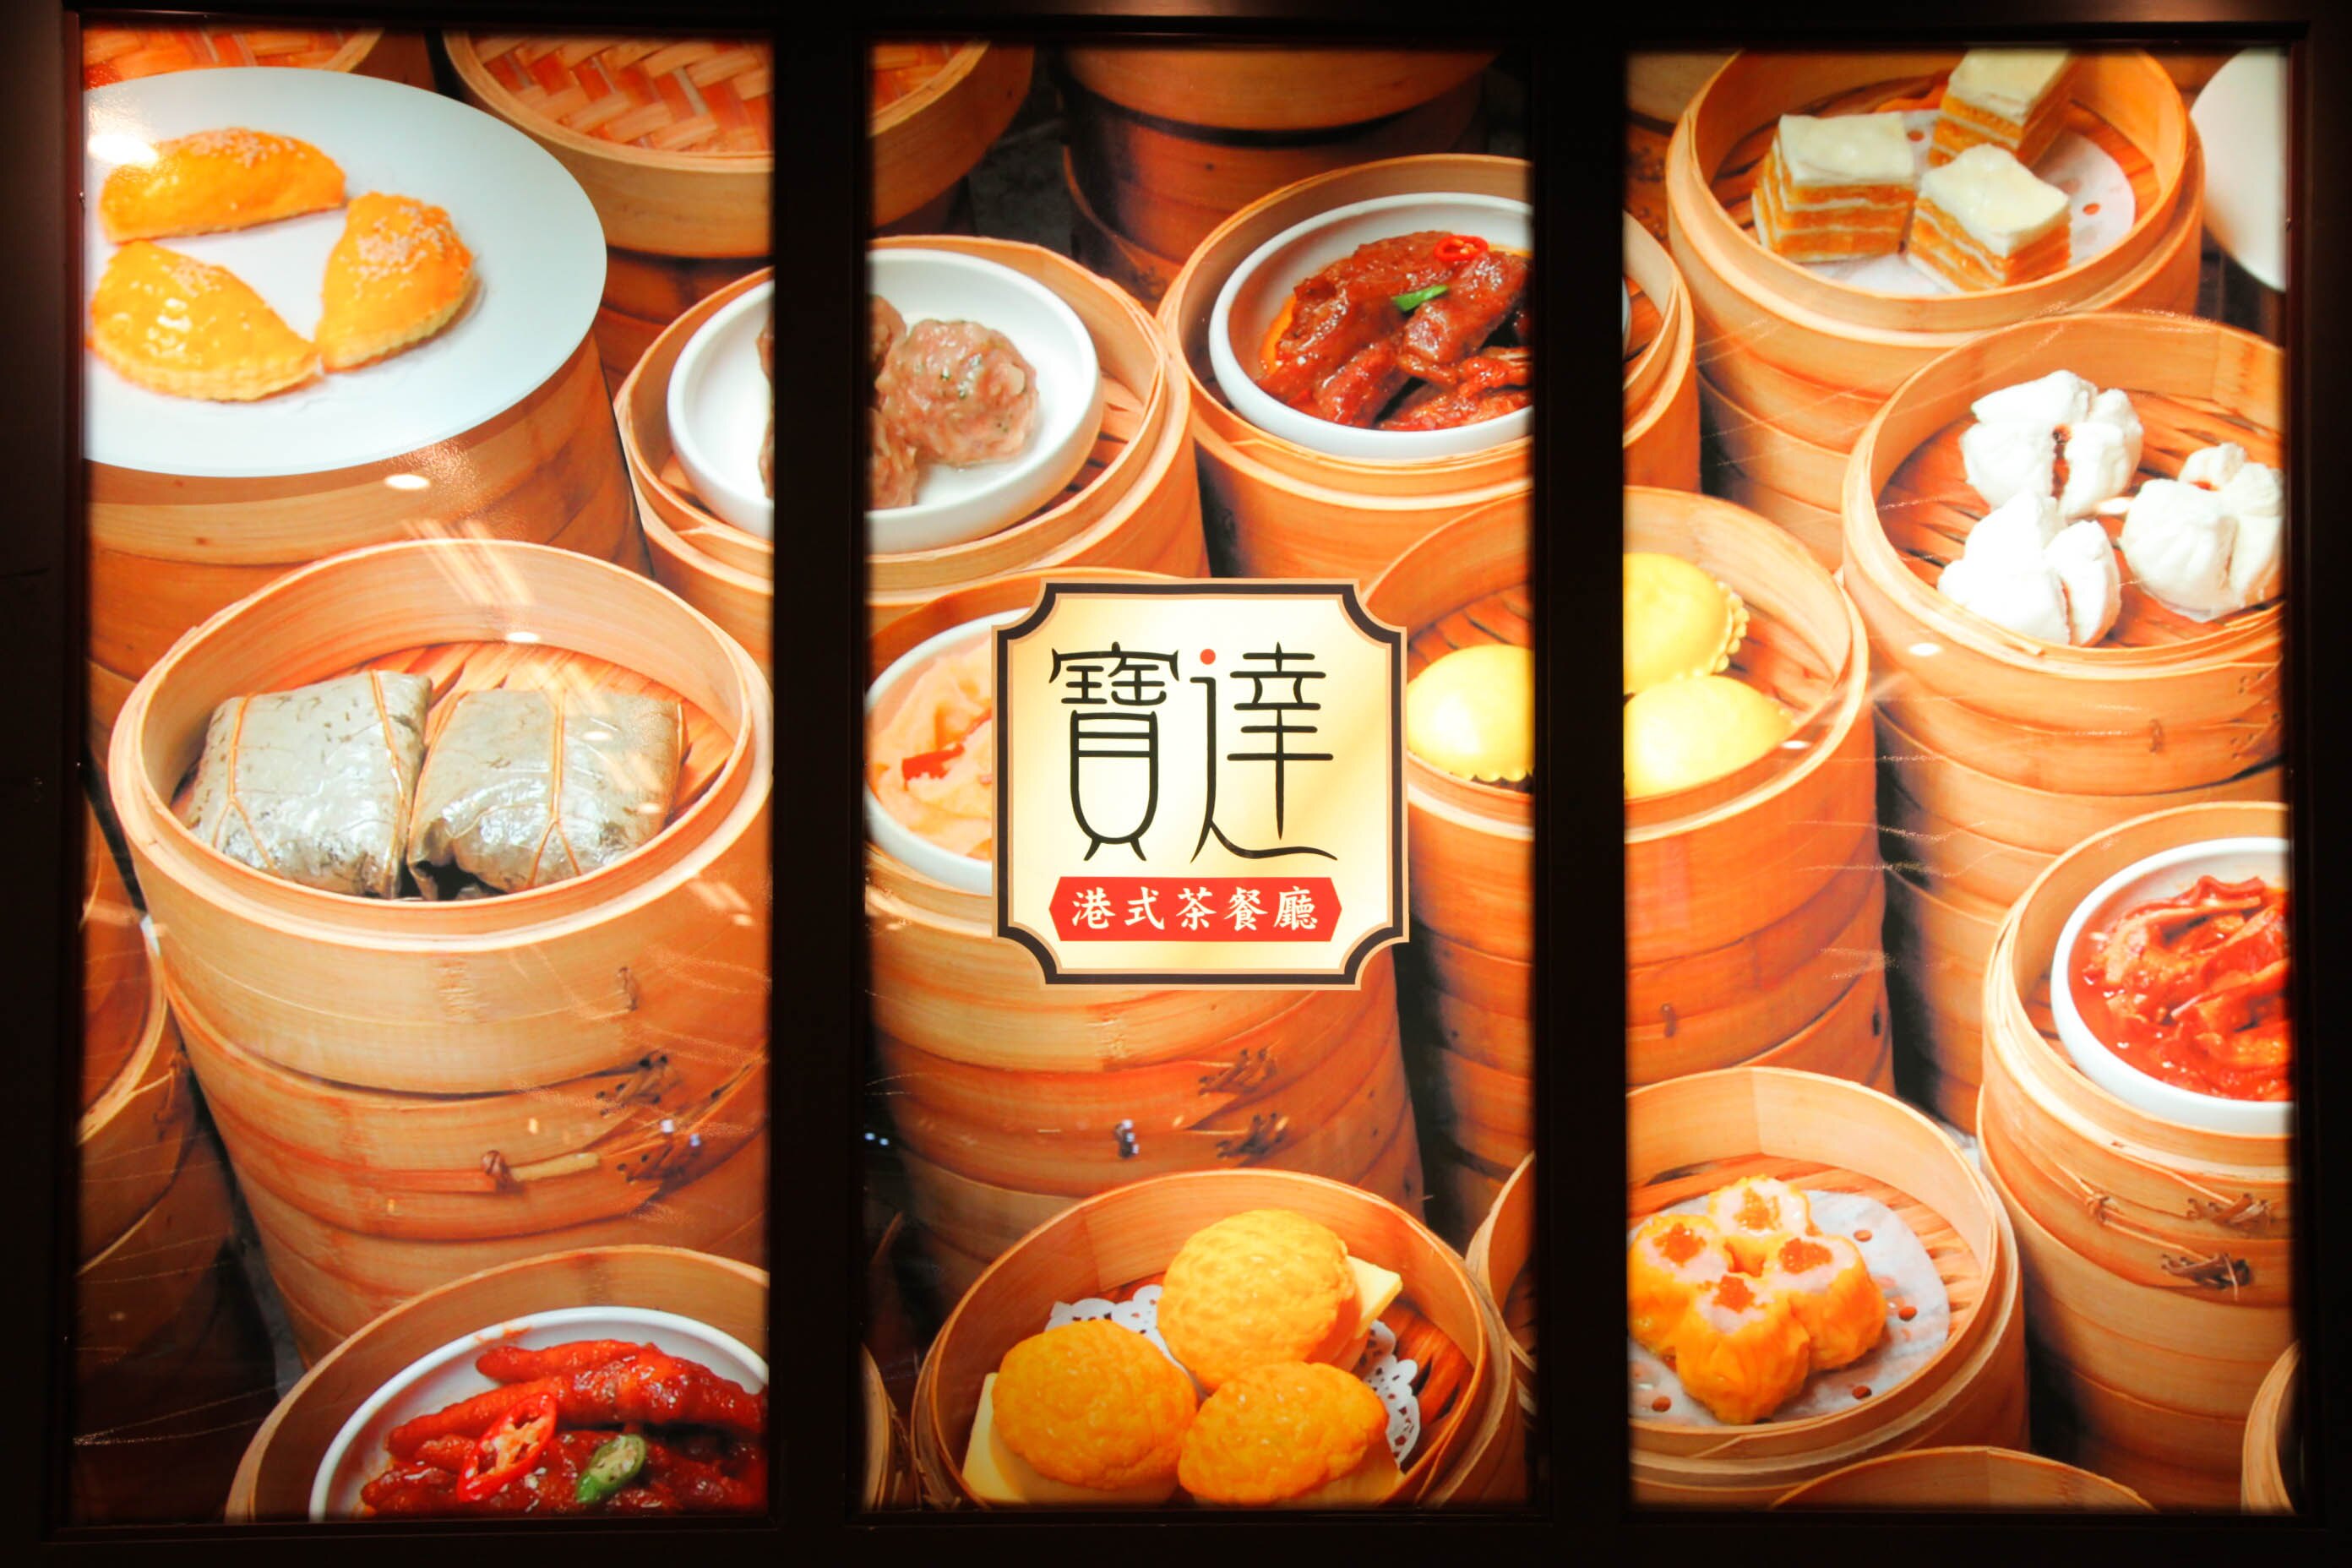 ร้านชาสไตล์ฮ่องกงเป่าต๋า สร้างบรรยากาศการรับประทานอาหารที่สะดวกสบาย เป็นกันเอง และผ่อนคลาย ภาพจาก／จางจัวเฉิง (張卓成)